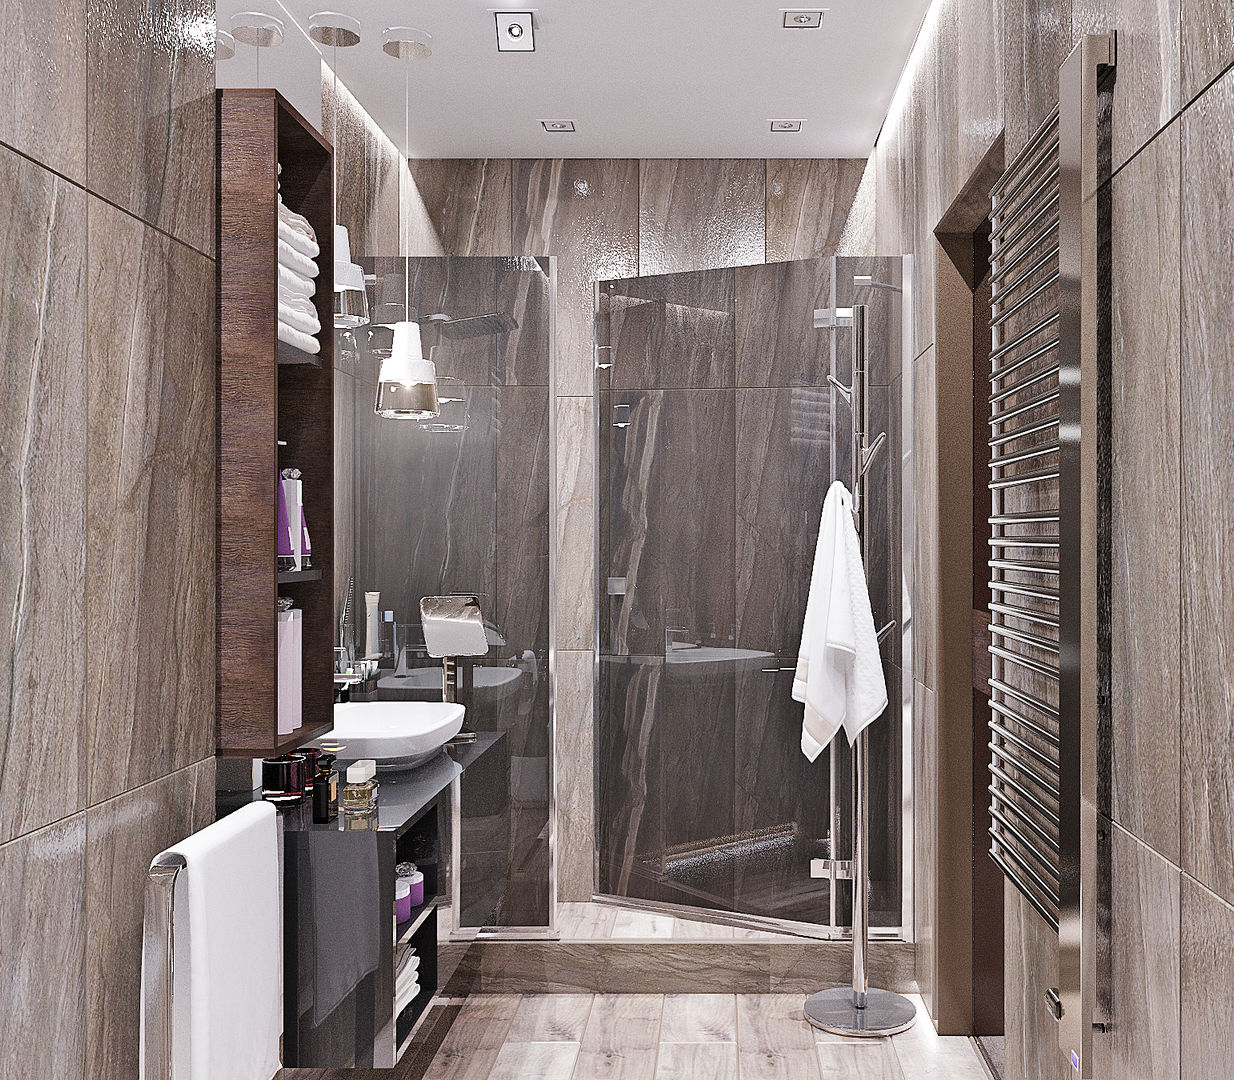 Ванная комната в стиле минимализм, Студия дизайна ROMANIUK DESIGN Студия дизайна ROMANIUK DESIGN Kamar Mandi Gaya Industrial